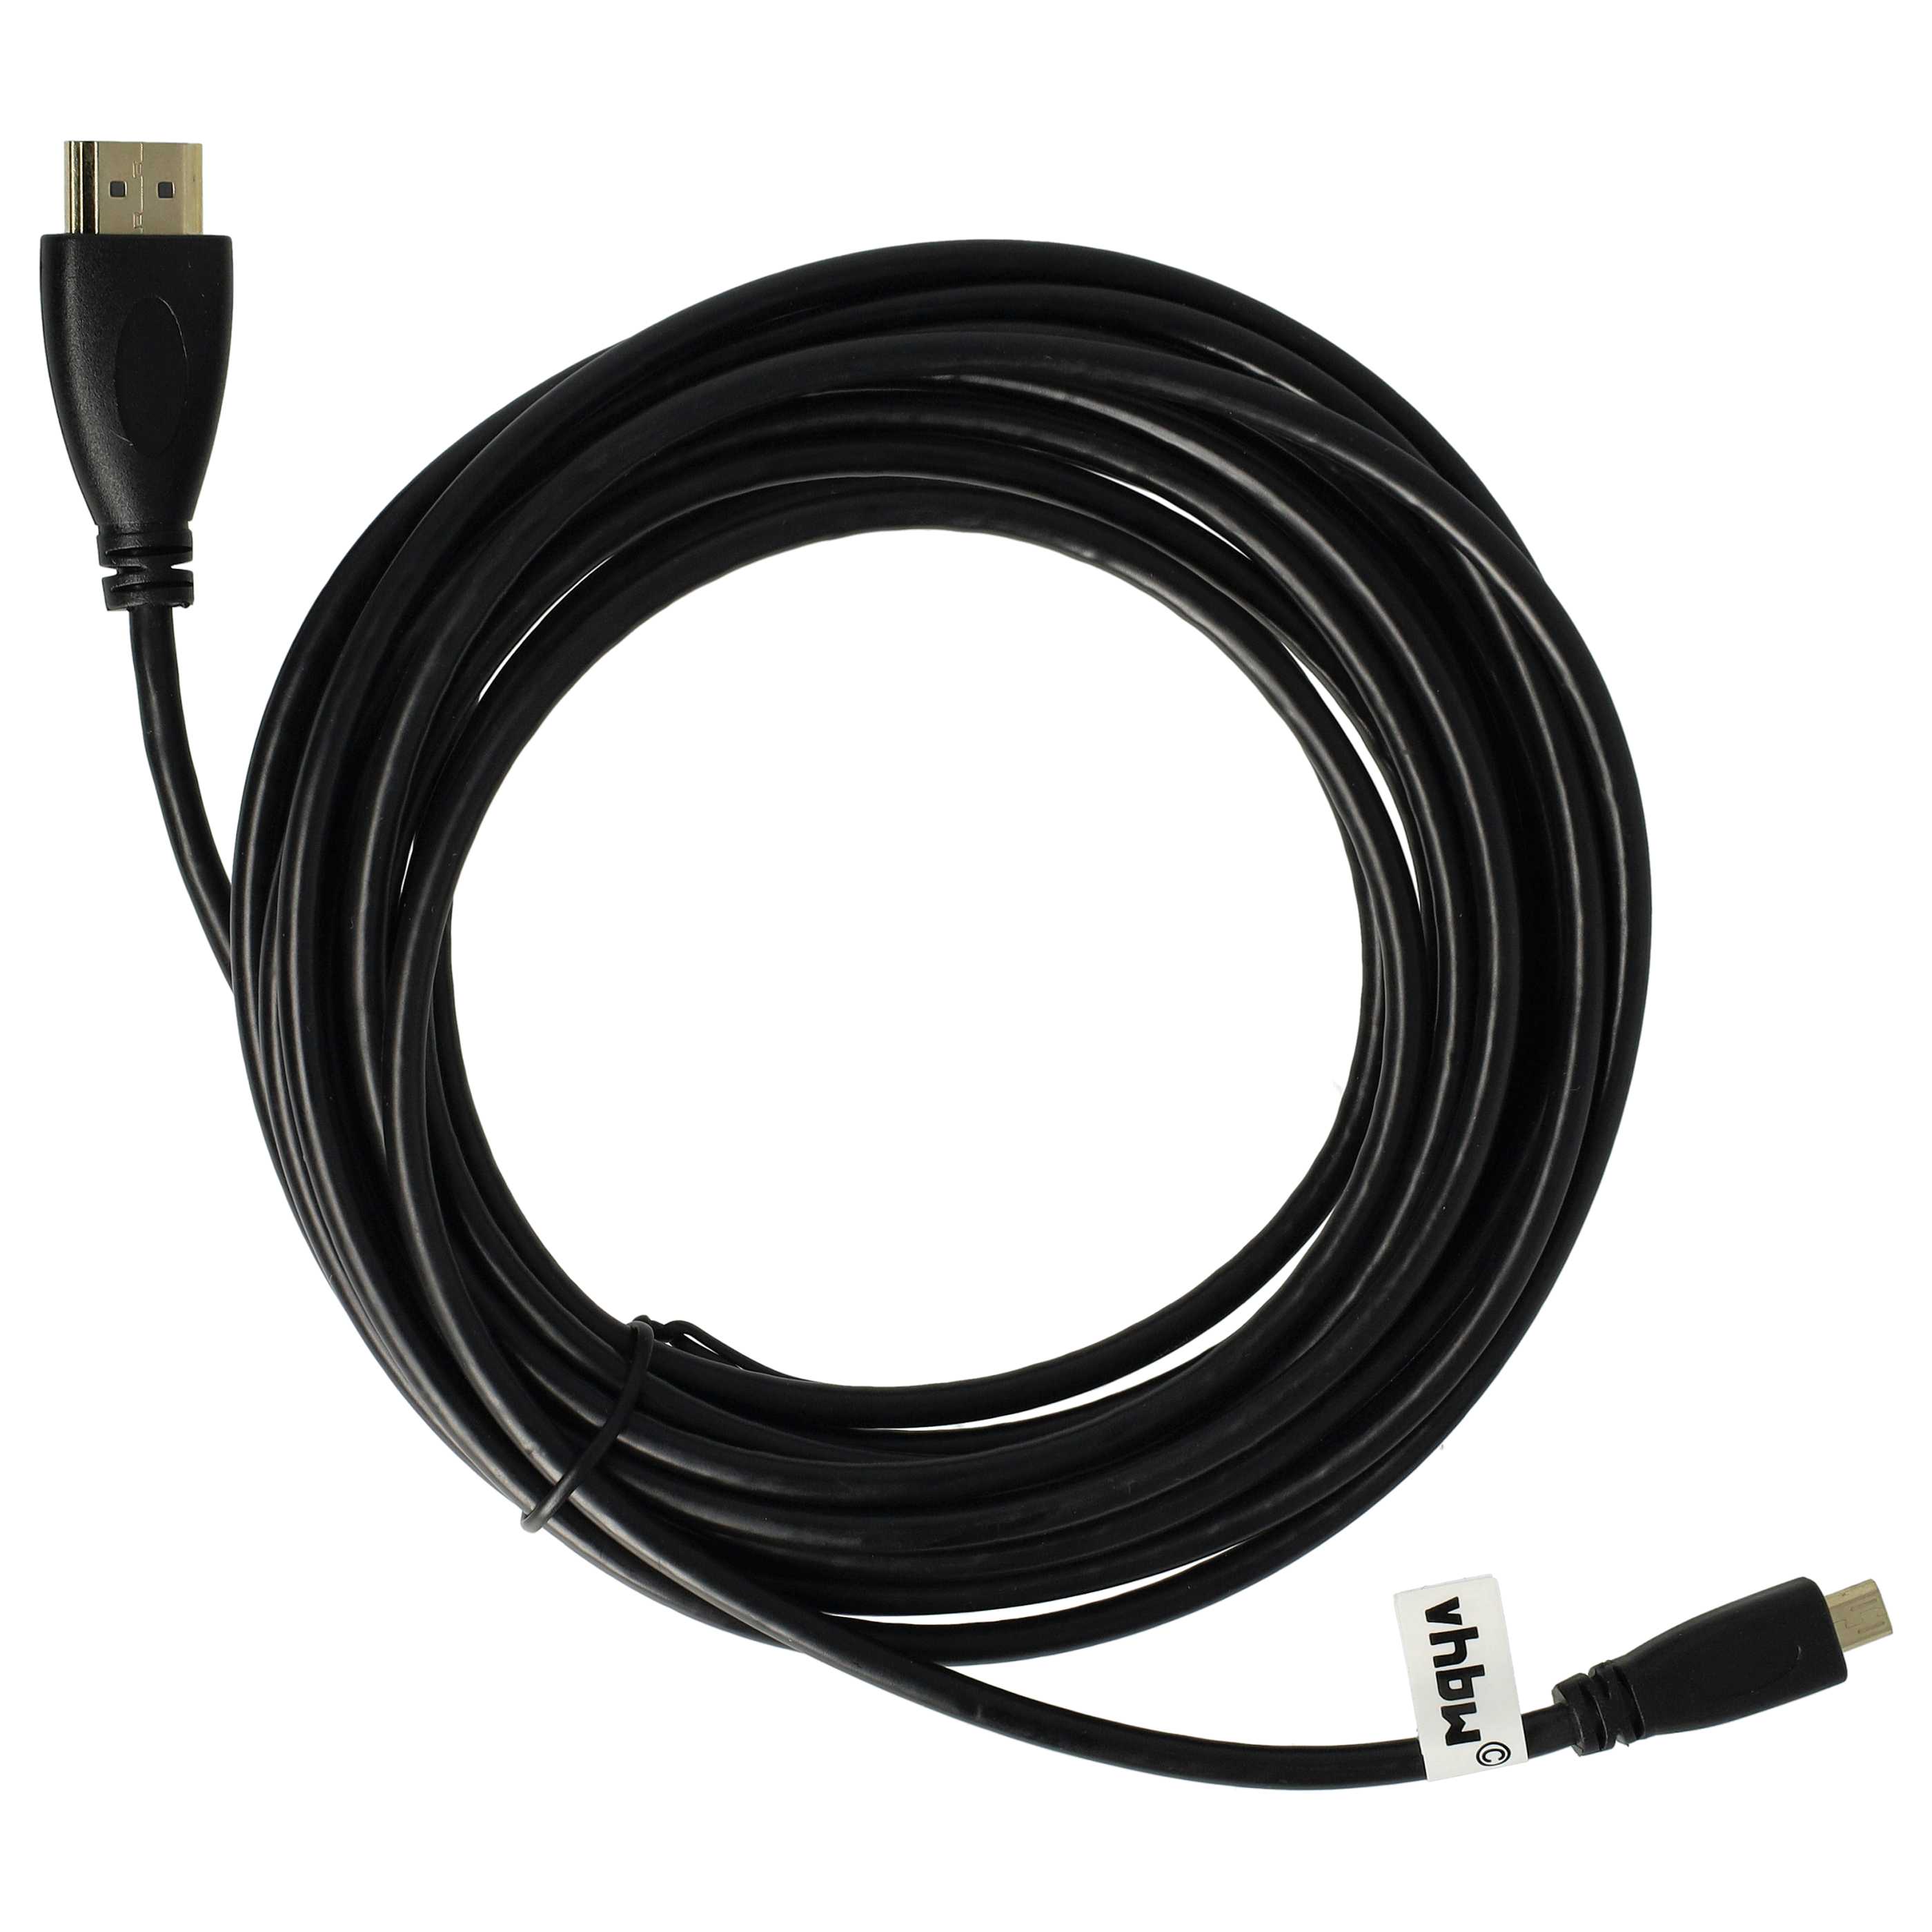 Cable HDMI, HDMI micro a HDMI 1.4 5m para tablets, smartphones, cámaras